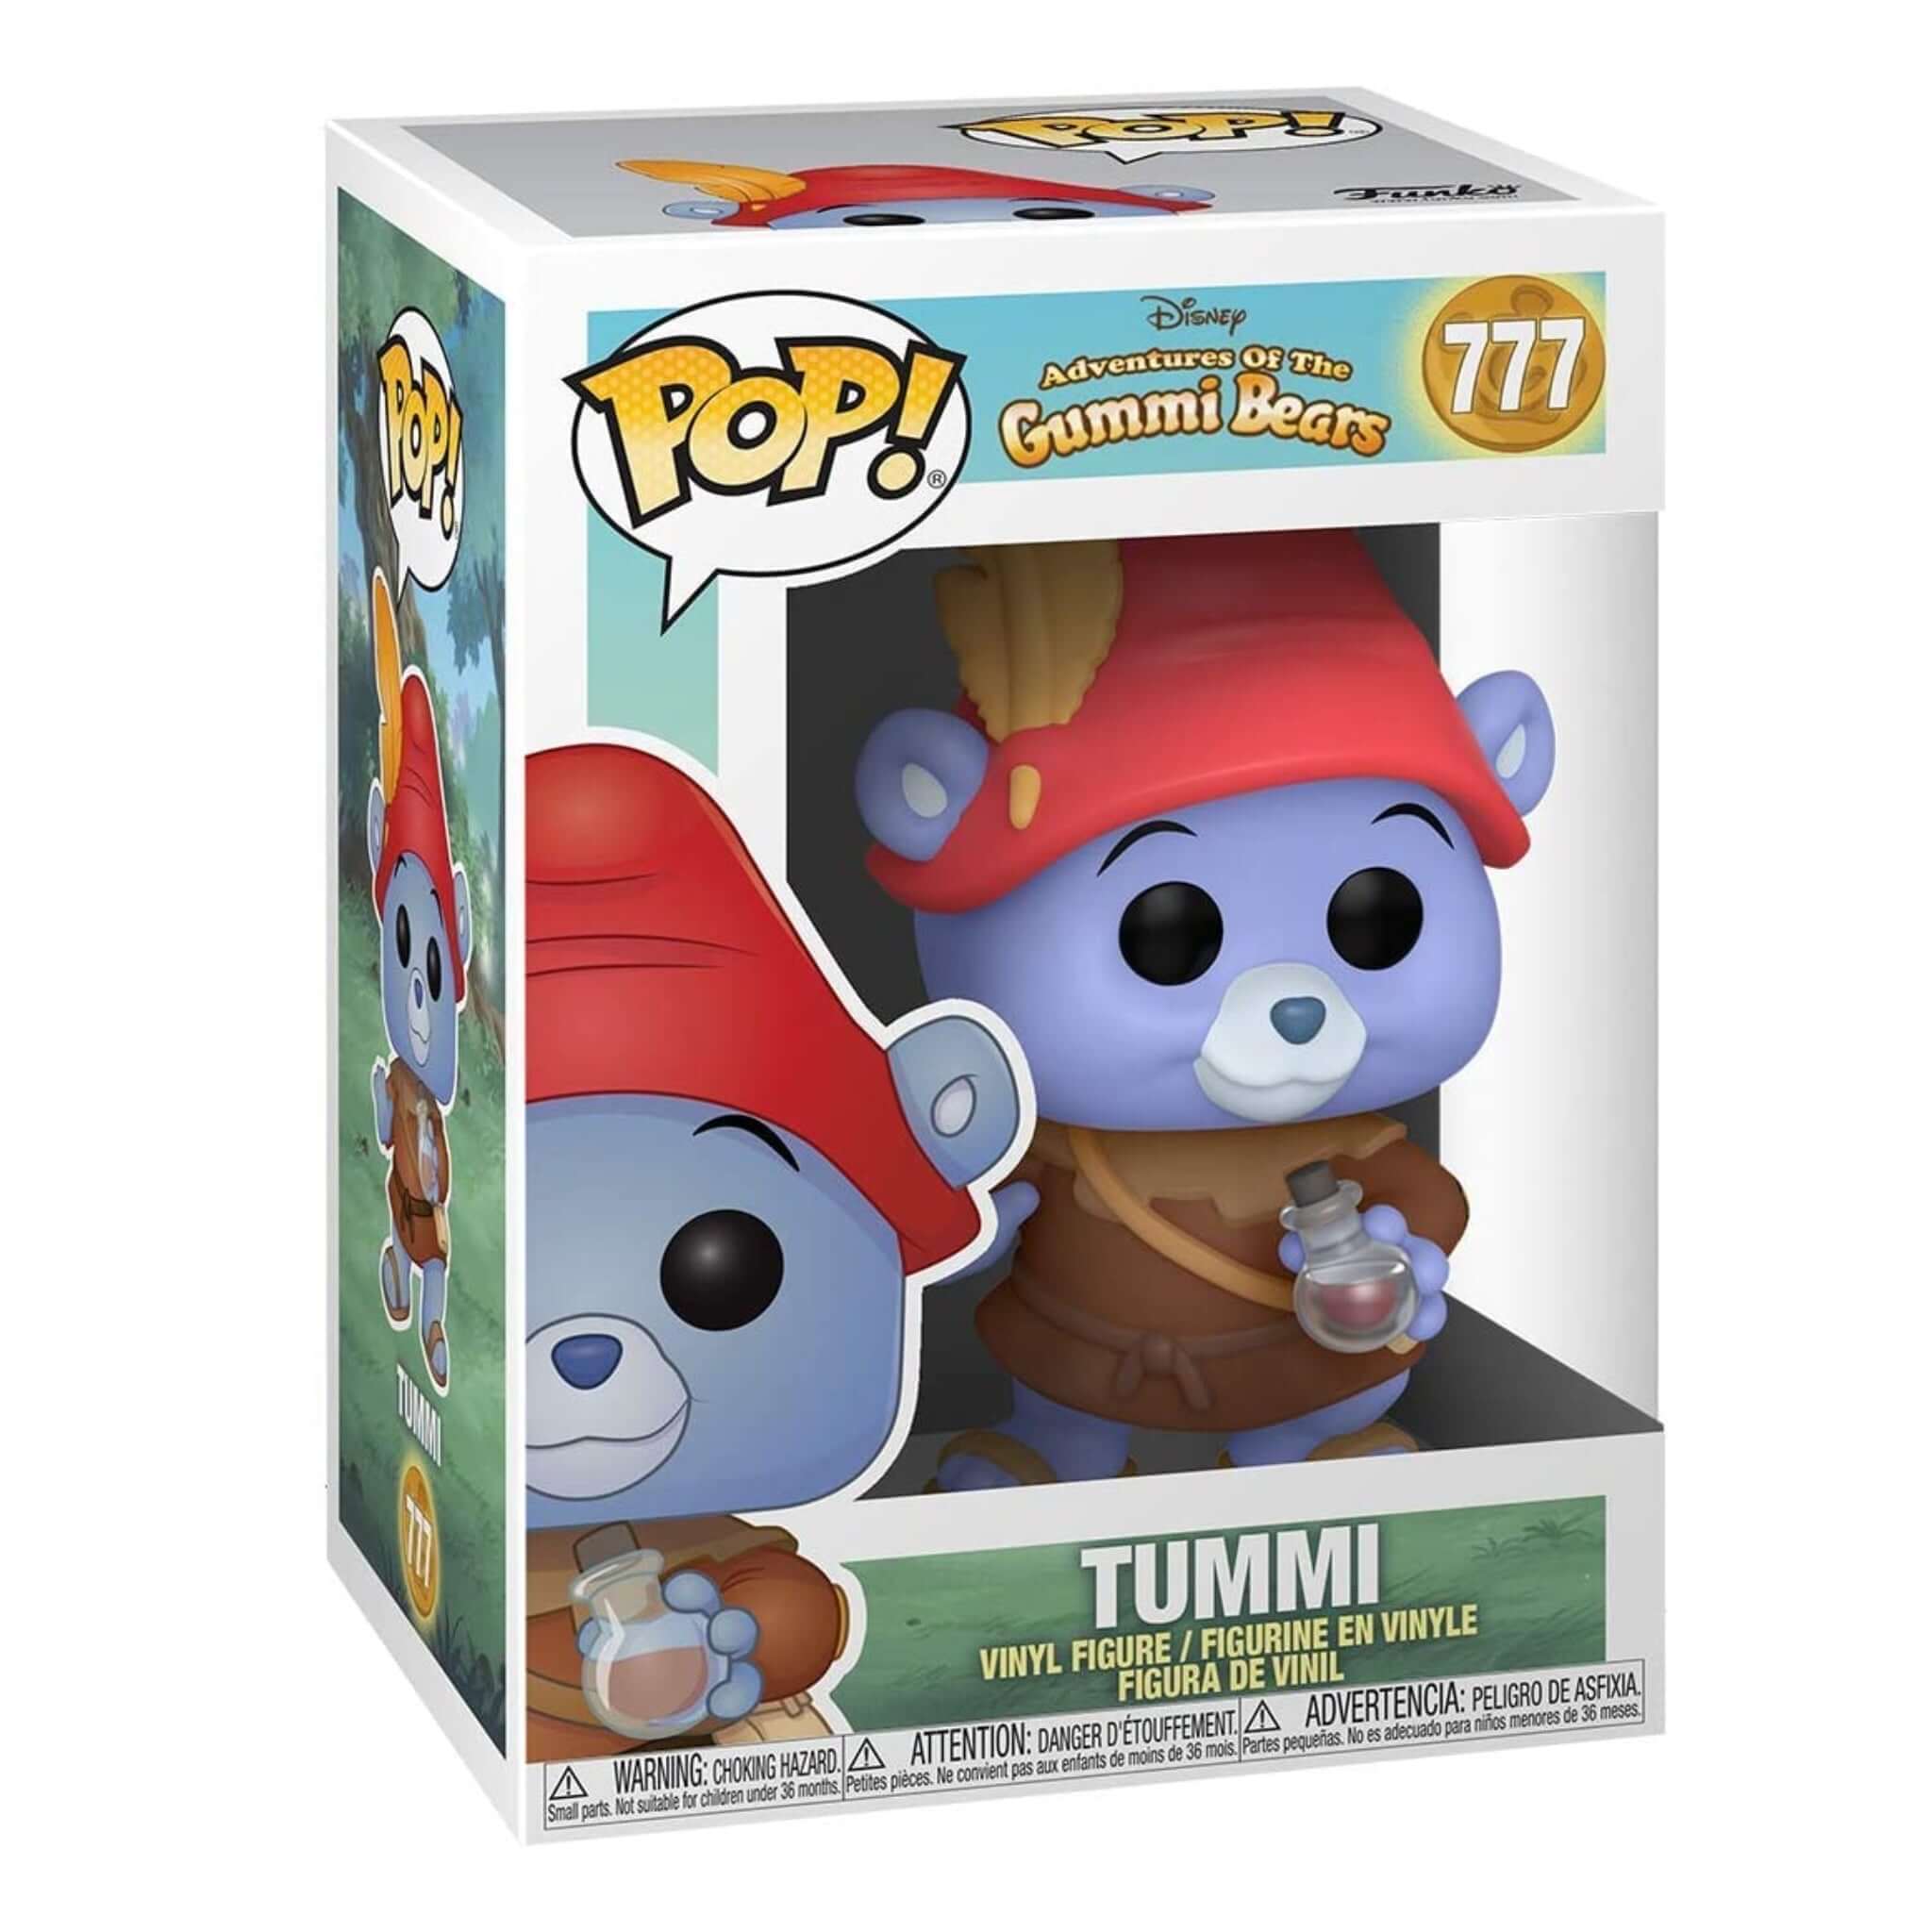 Tummi Funko Pop!-Jingle Truck Toys